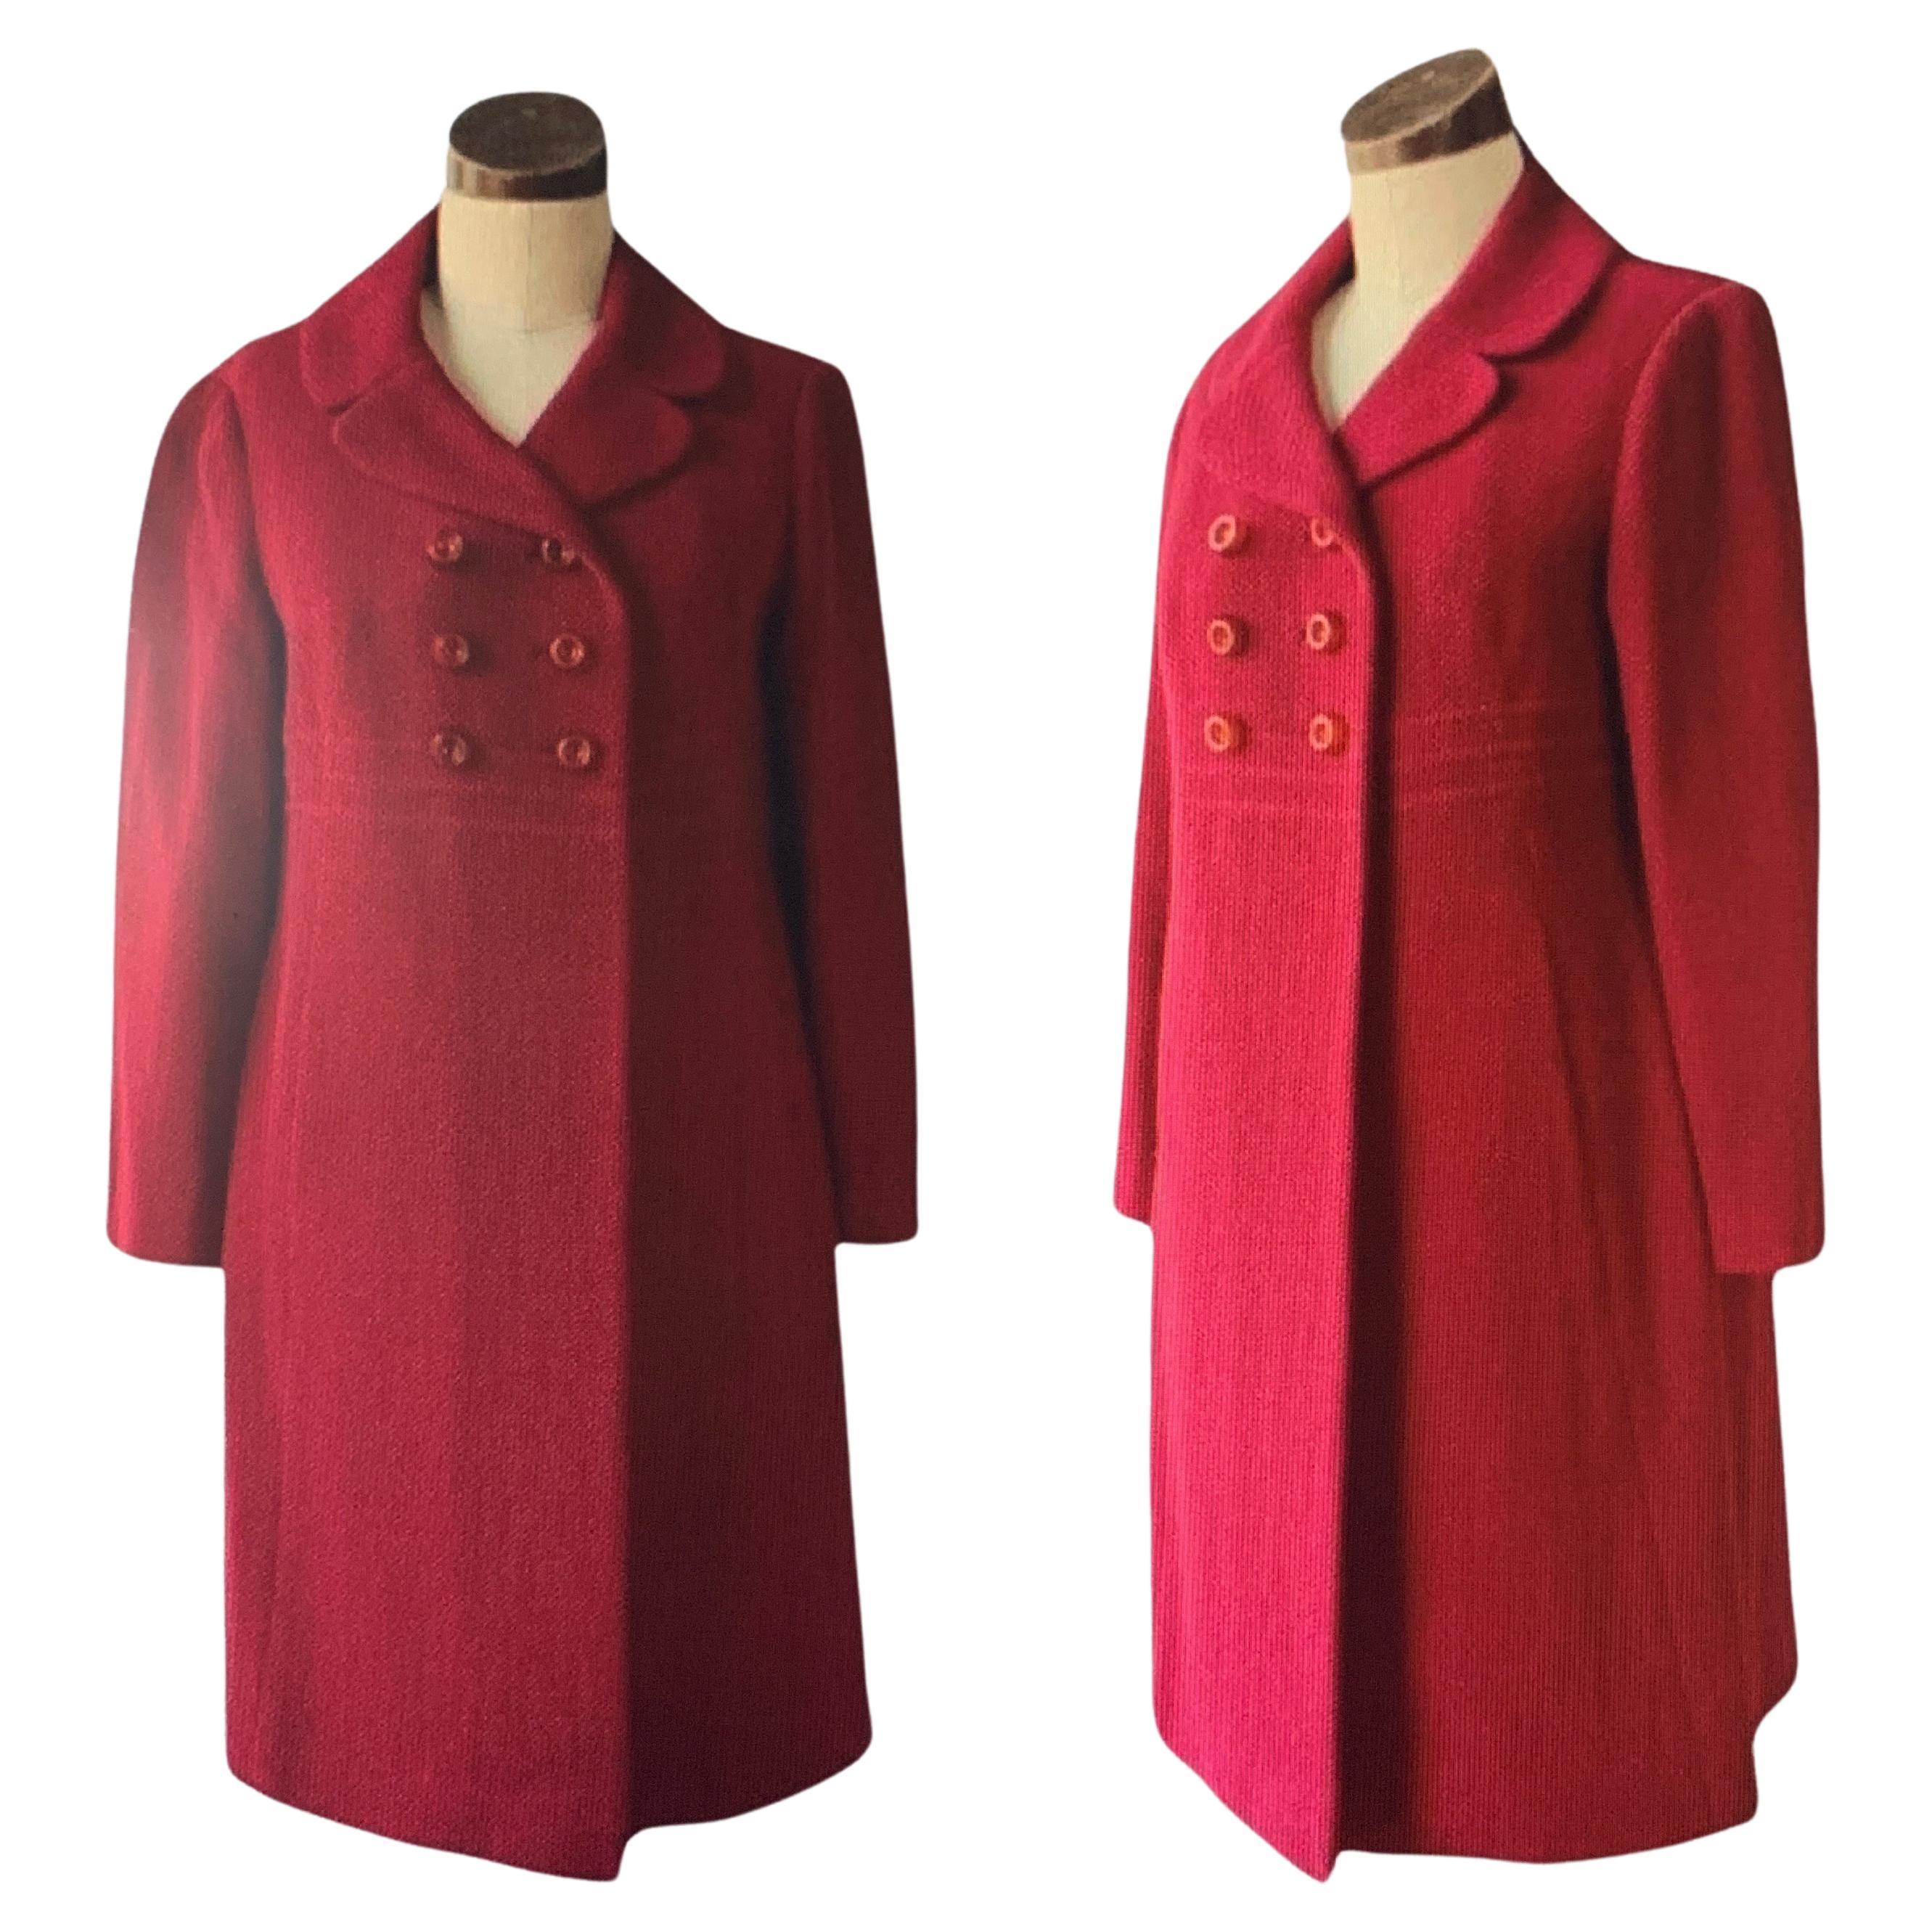 Prince Fashion, 1940's Dress Coat, laine mélangée côtelée, entièrement doublé avec broderie, col rond, deux poches doublées, poche intérieure doublée, trois boutons de fermeture en lucite sur le devant et trois boutons décoratifs en lucite